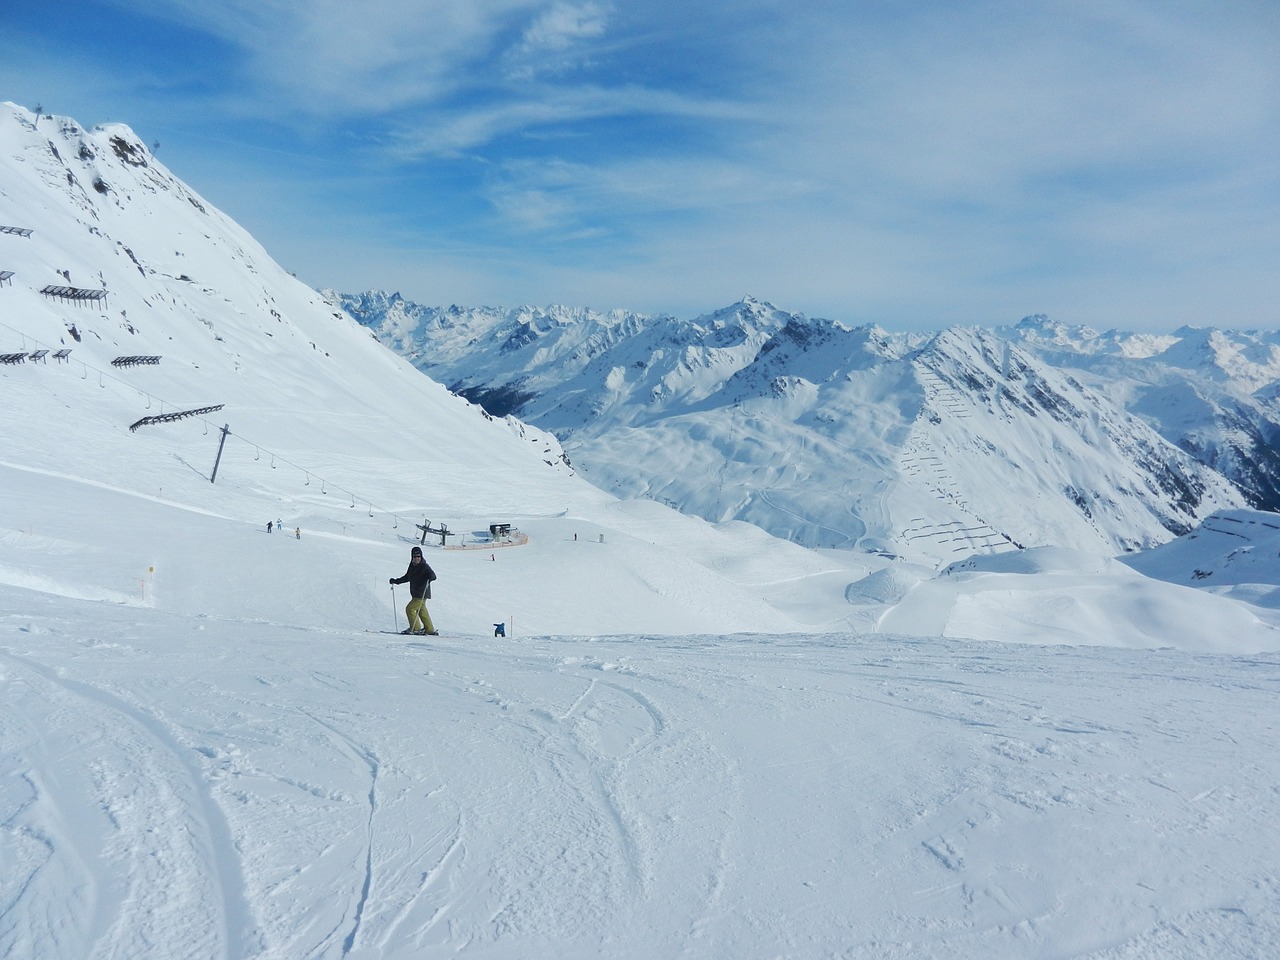 vorarlberg skiing outlook free photo